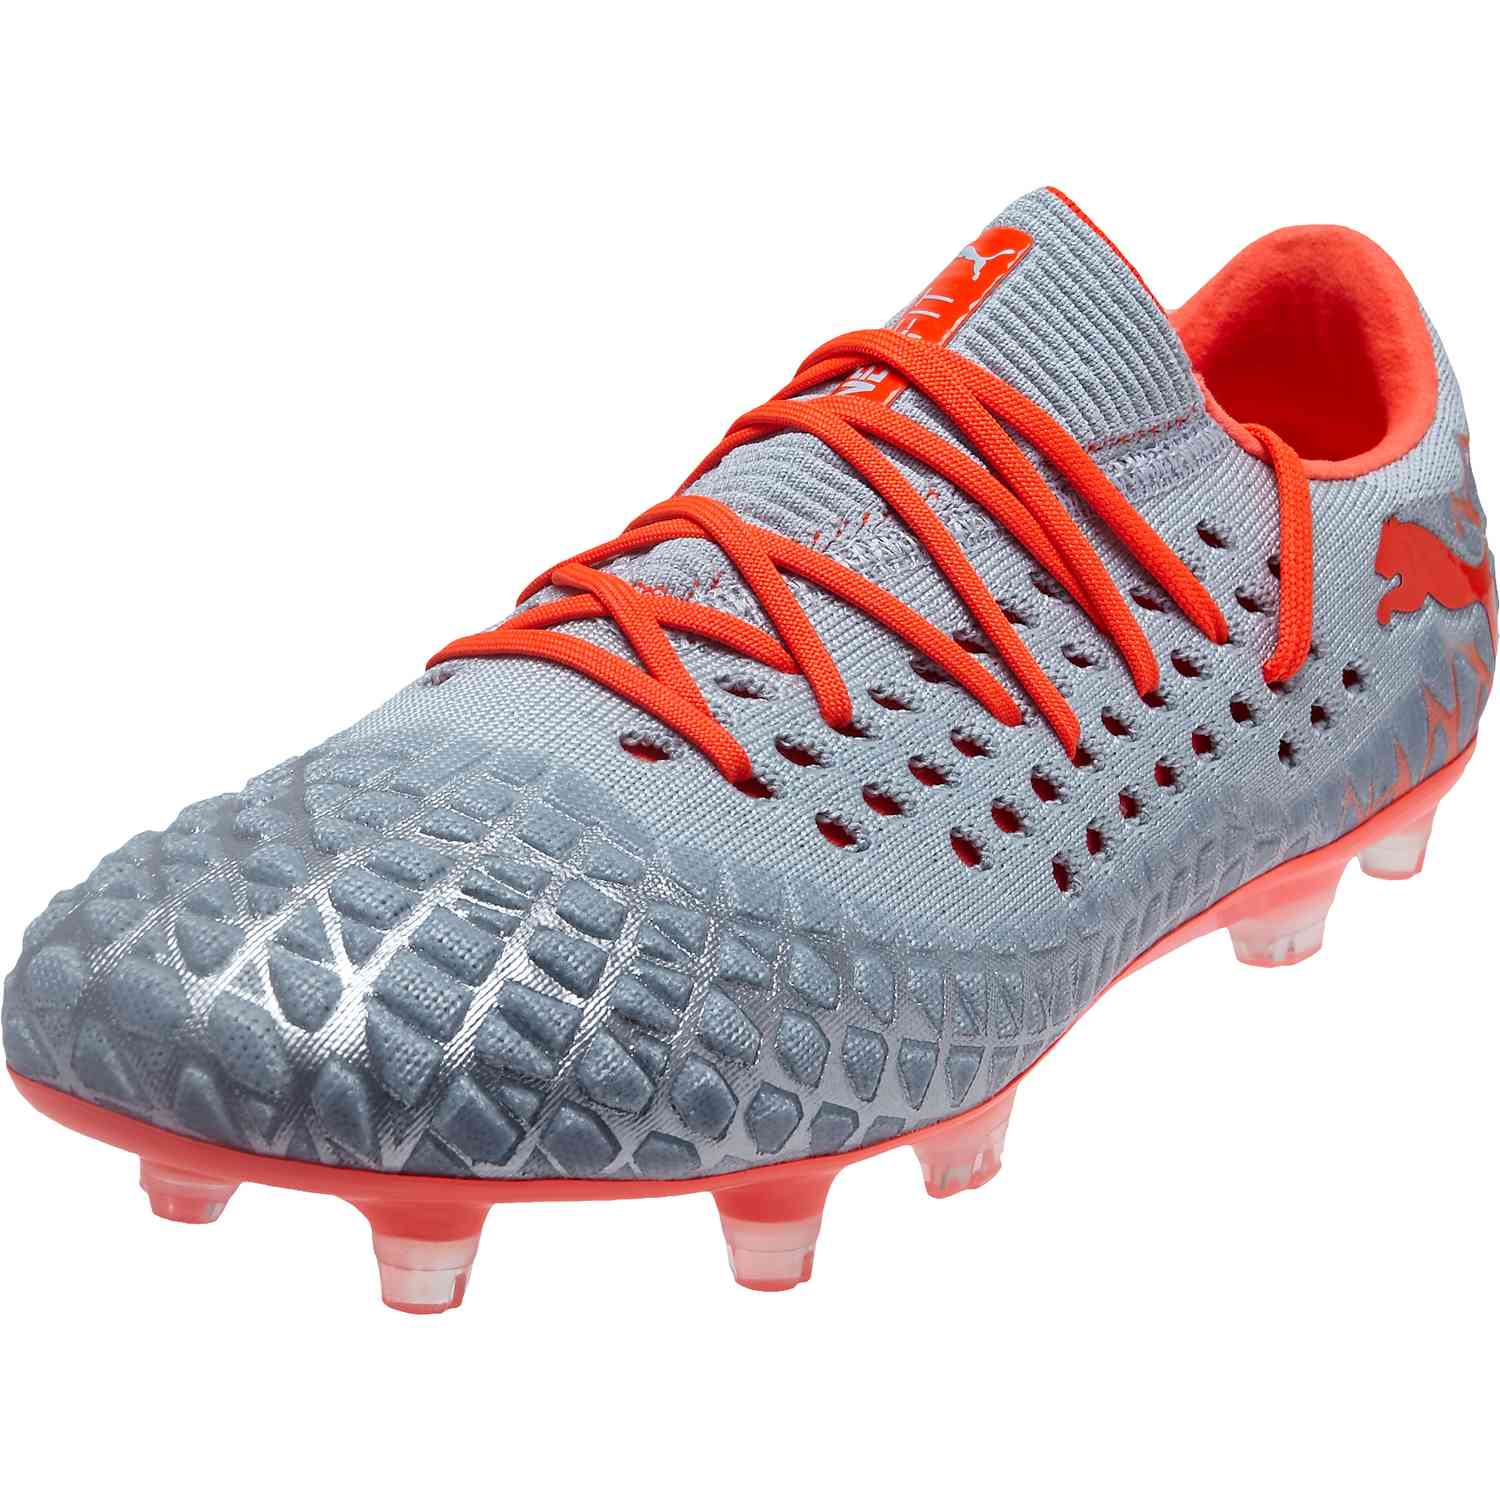 U.S. Size 4-9 UNIQUFERANGER Foture 4.1 Netfit FG AG Athletic Soccer Shoes XX 17.2 Firm Ground Cleats Soccer Shoe 